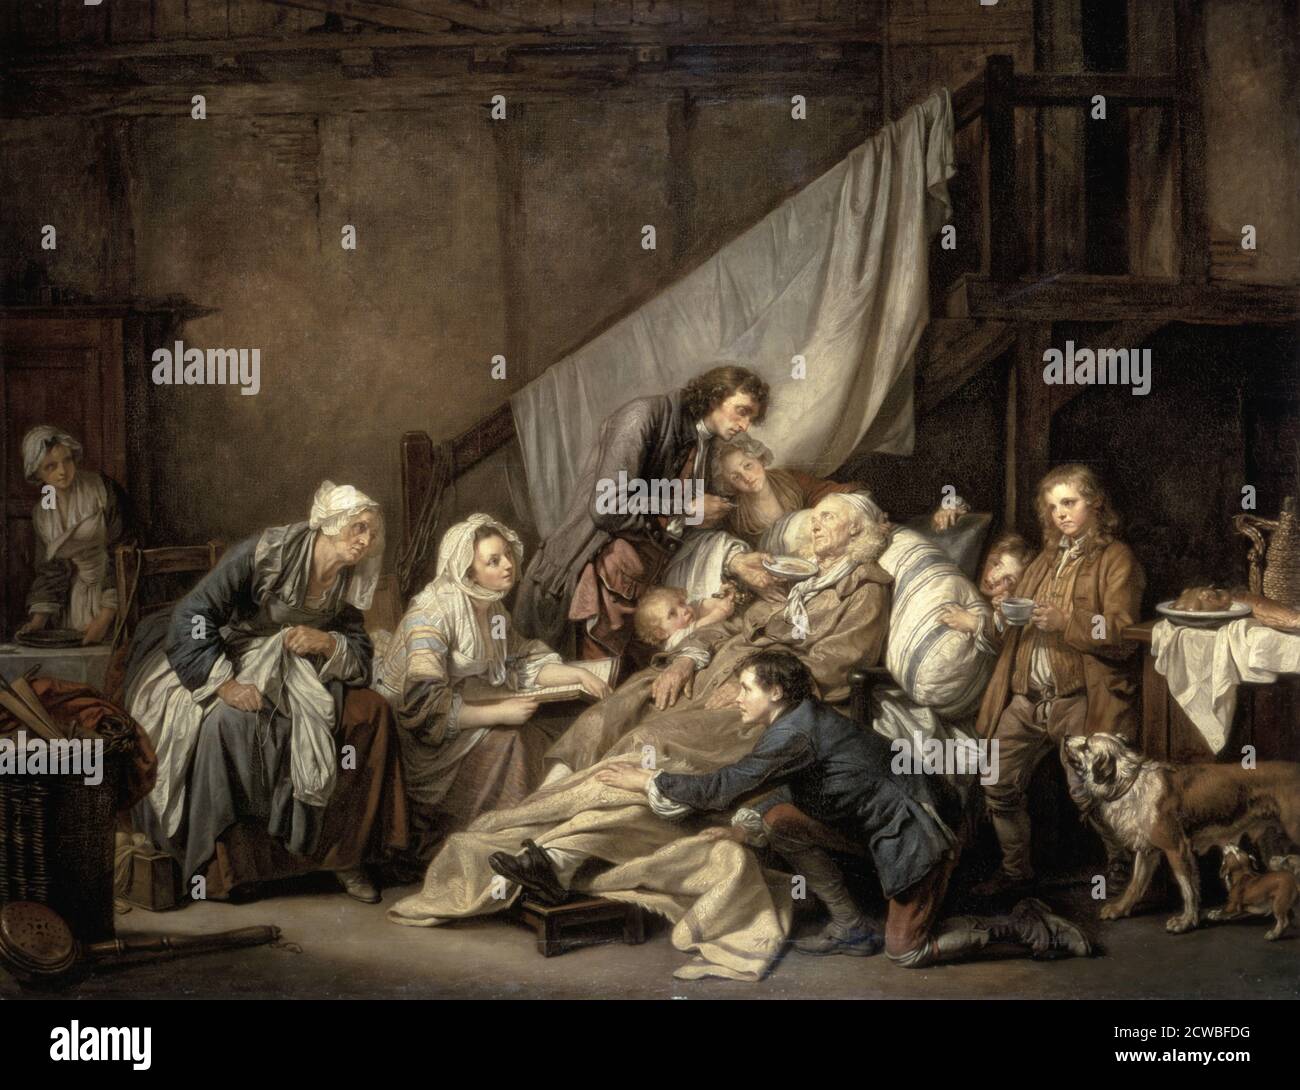 Piedad filial por Jean-Baptiste Greuze. Jean-Baptiste Greuze (21 de agosto de 1725 - 4 de marzo de 1805) fue un pintor francés de retratos, escenas de género y pintura de historia 1763 Foto de stock